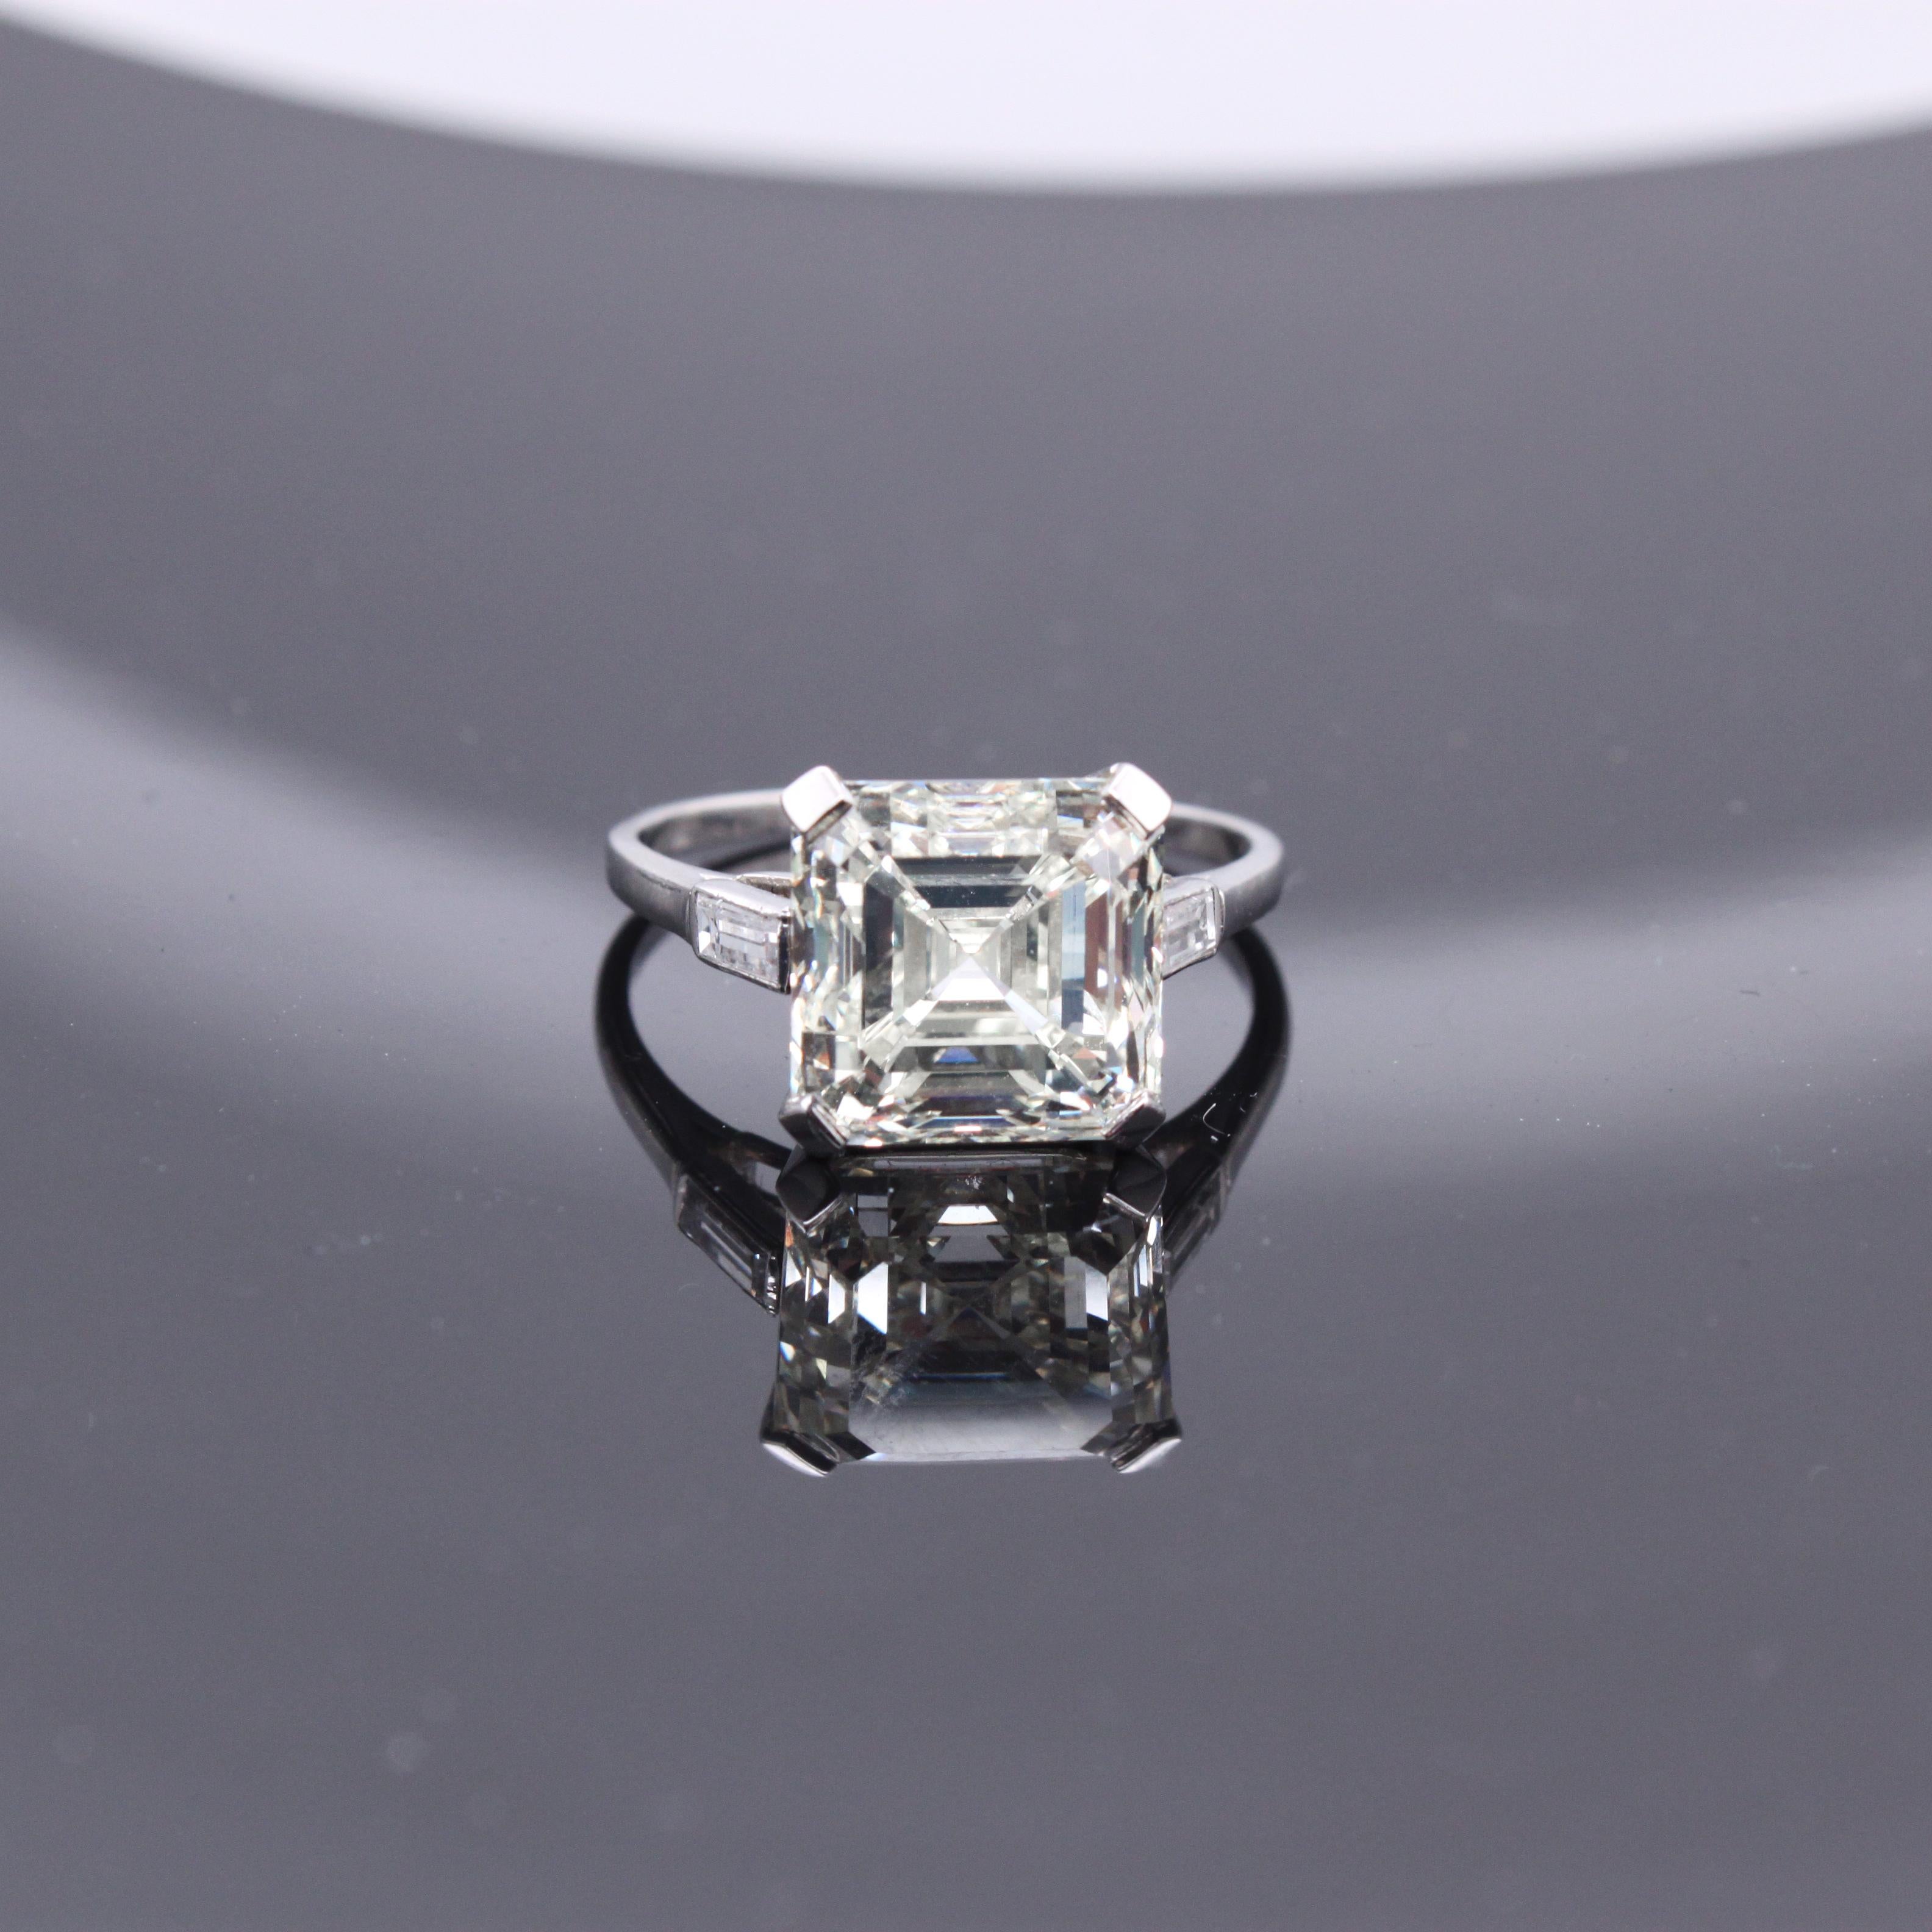 Asscher Cut 5.02 Carat Ascher Cut Diamond Ring